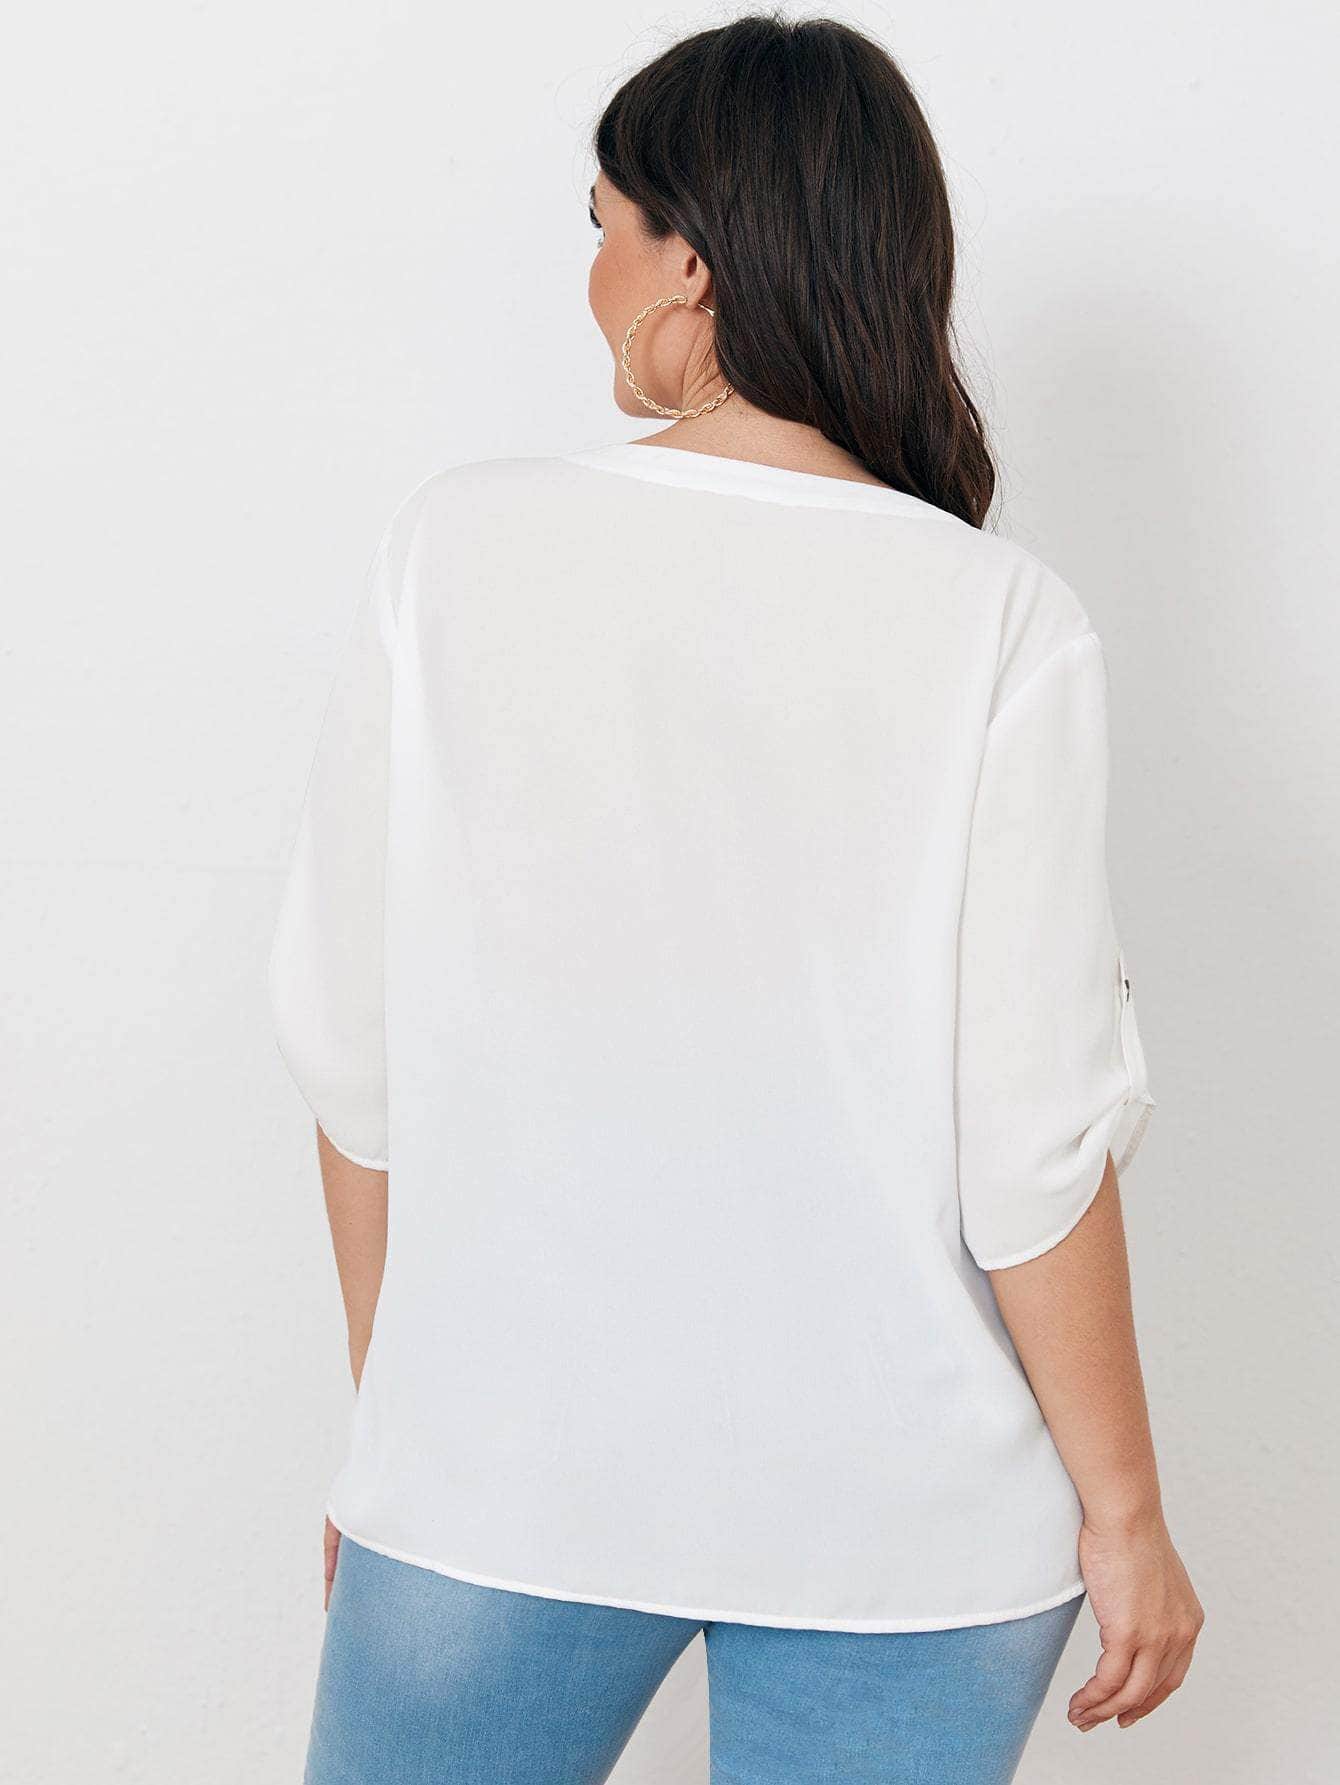 Blanco / 1XL Blusa de manga enrollada con botón tapeta con botón